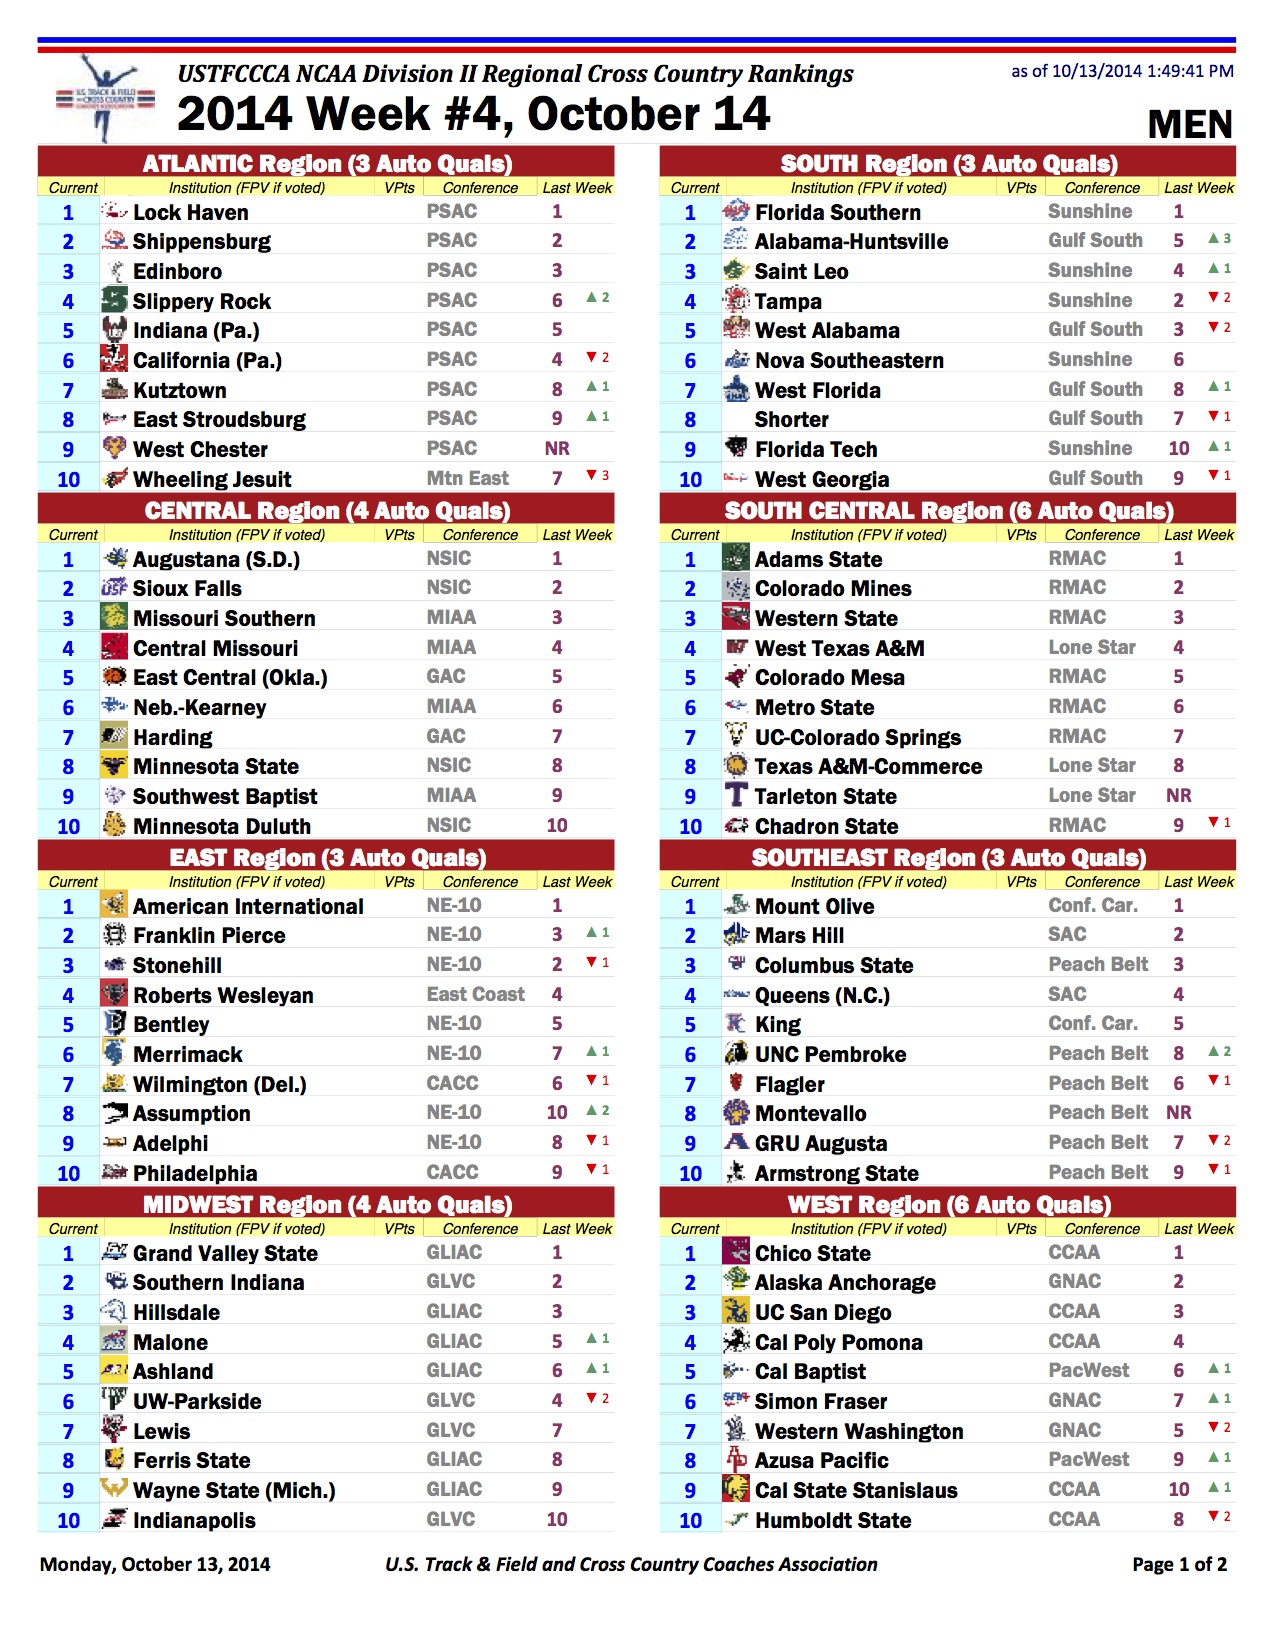 USTFCCCA D2 Regional Rankings Week 4 FloTrack